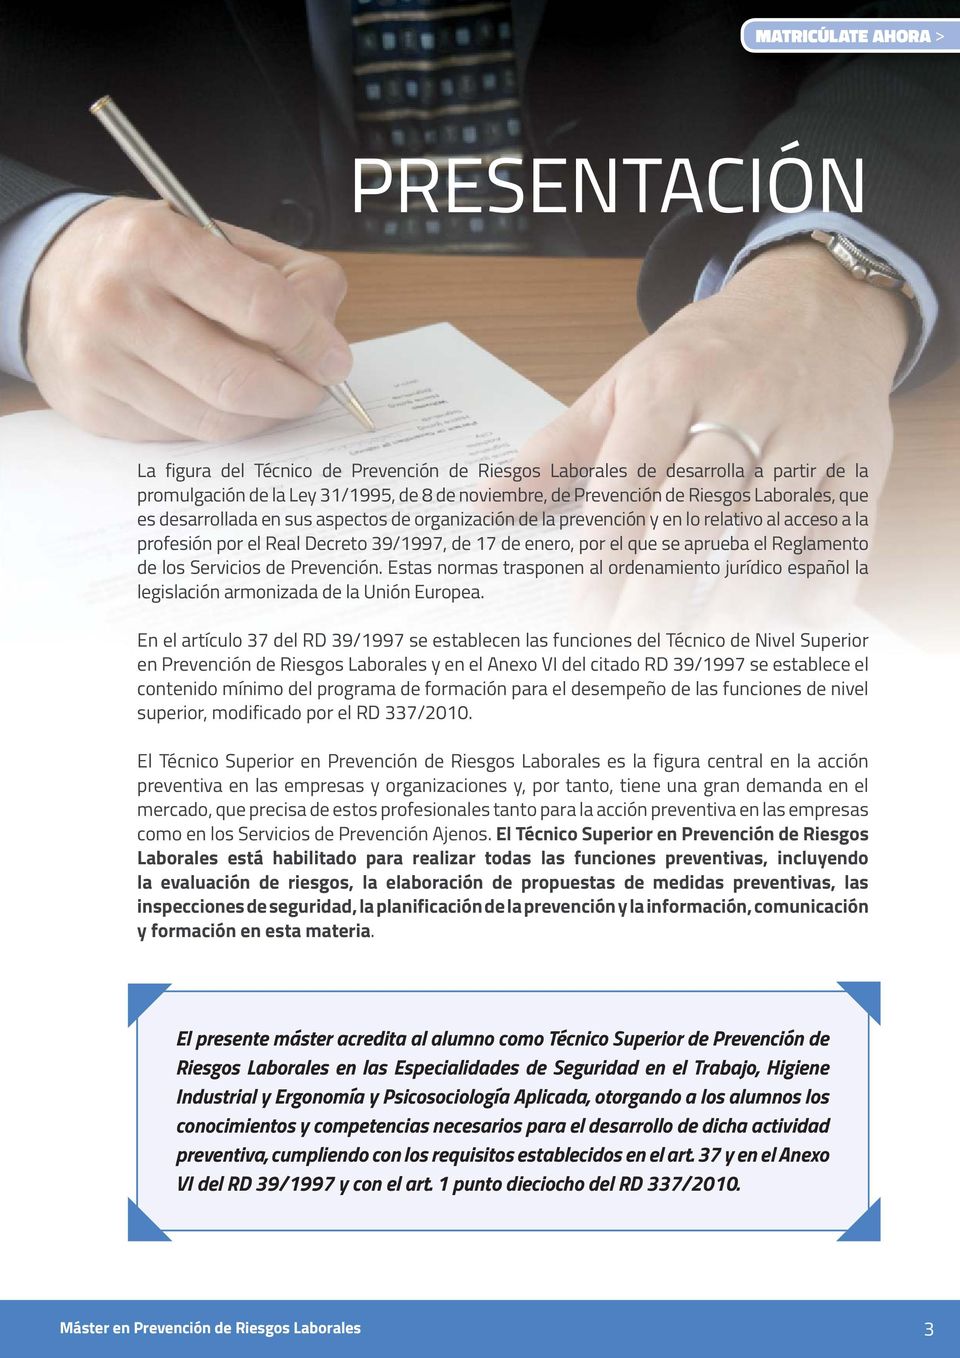 Reglamento de los Servicios de Prevención. Estas normas trasponen al ordenamiento jurídico español la legislación armonizada de la Unión Europea.